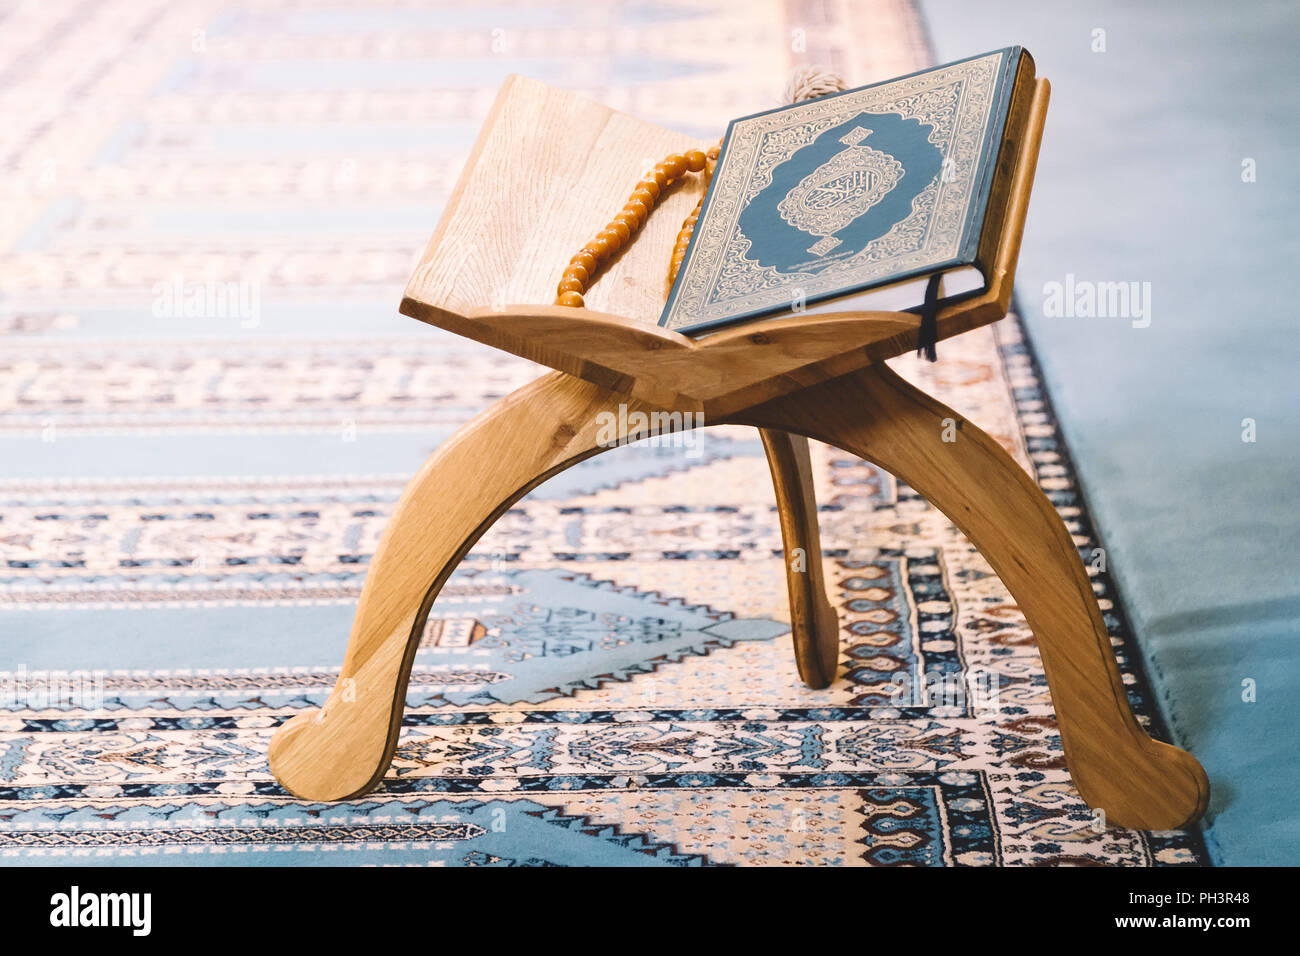 Le Coran, livre saint des musulmans à travers le monde, sur support en bois Banque D'Images